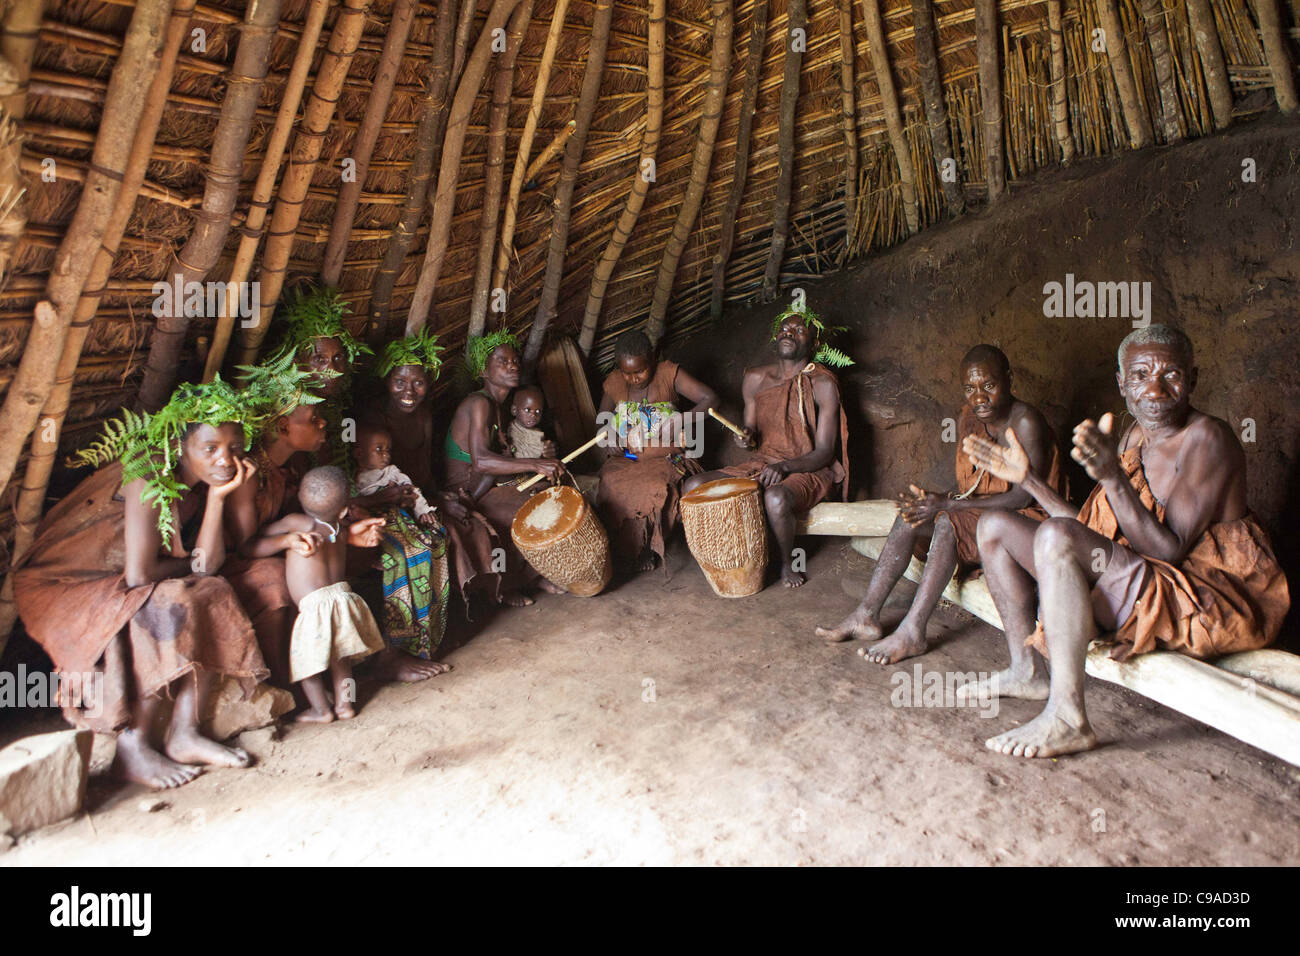 La danse et la musique comme une histoire de Mukuno, village batwa traditionnel de la tribu autochtone de la Forêt impénétrable de Bwindi en Ouganda. Banque D'Images